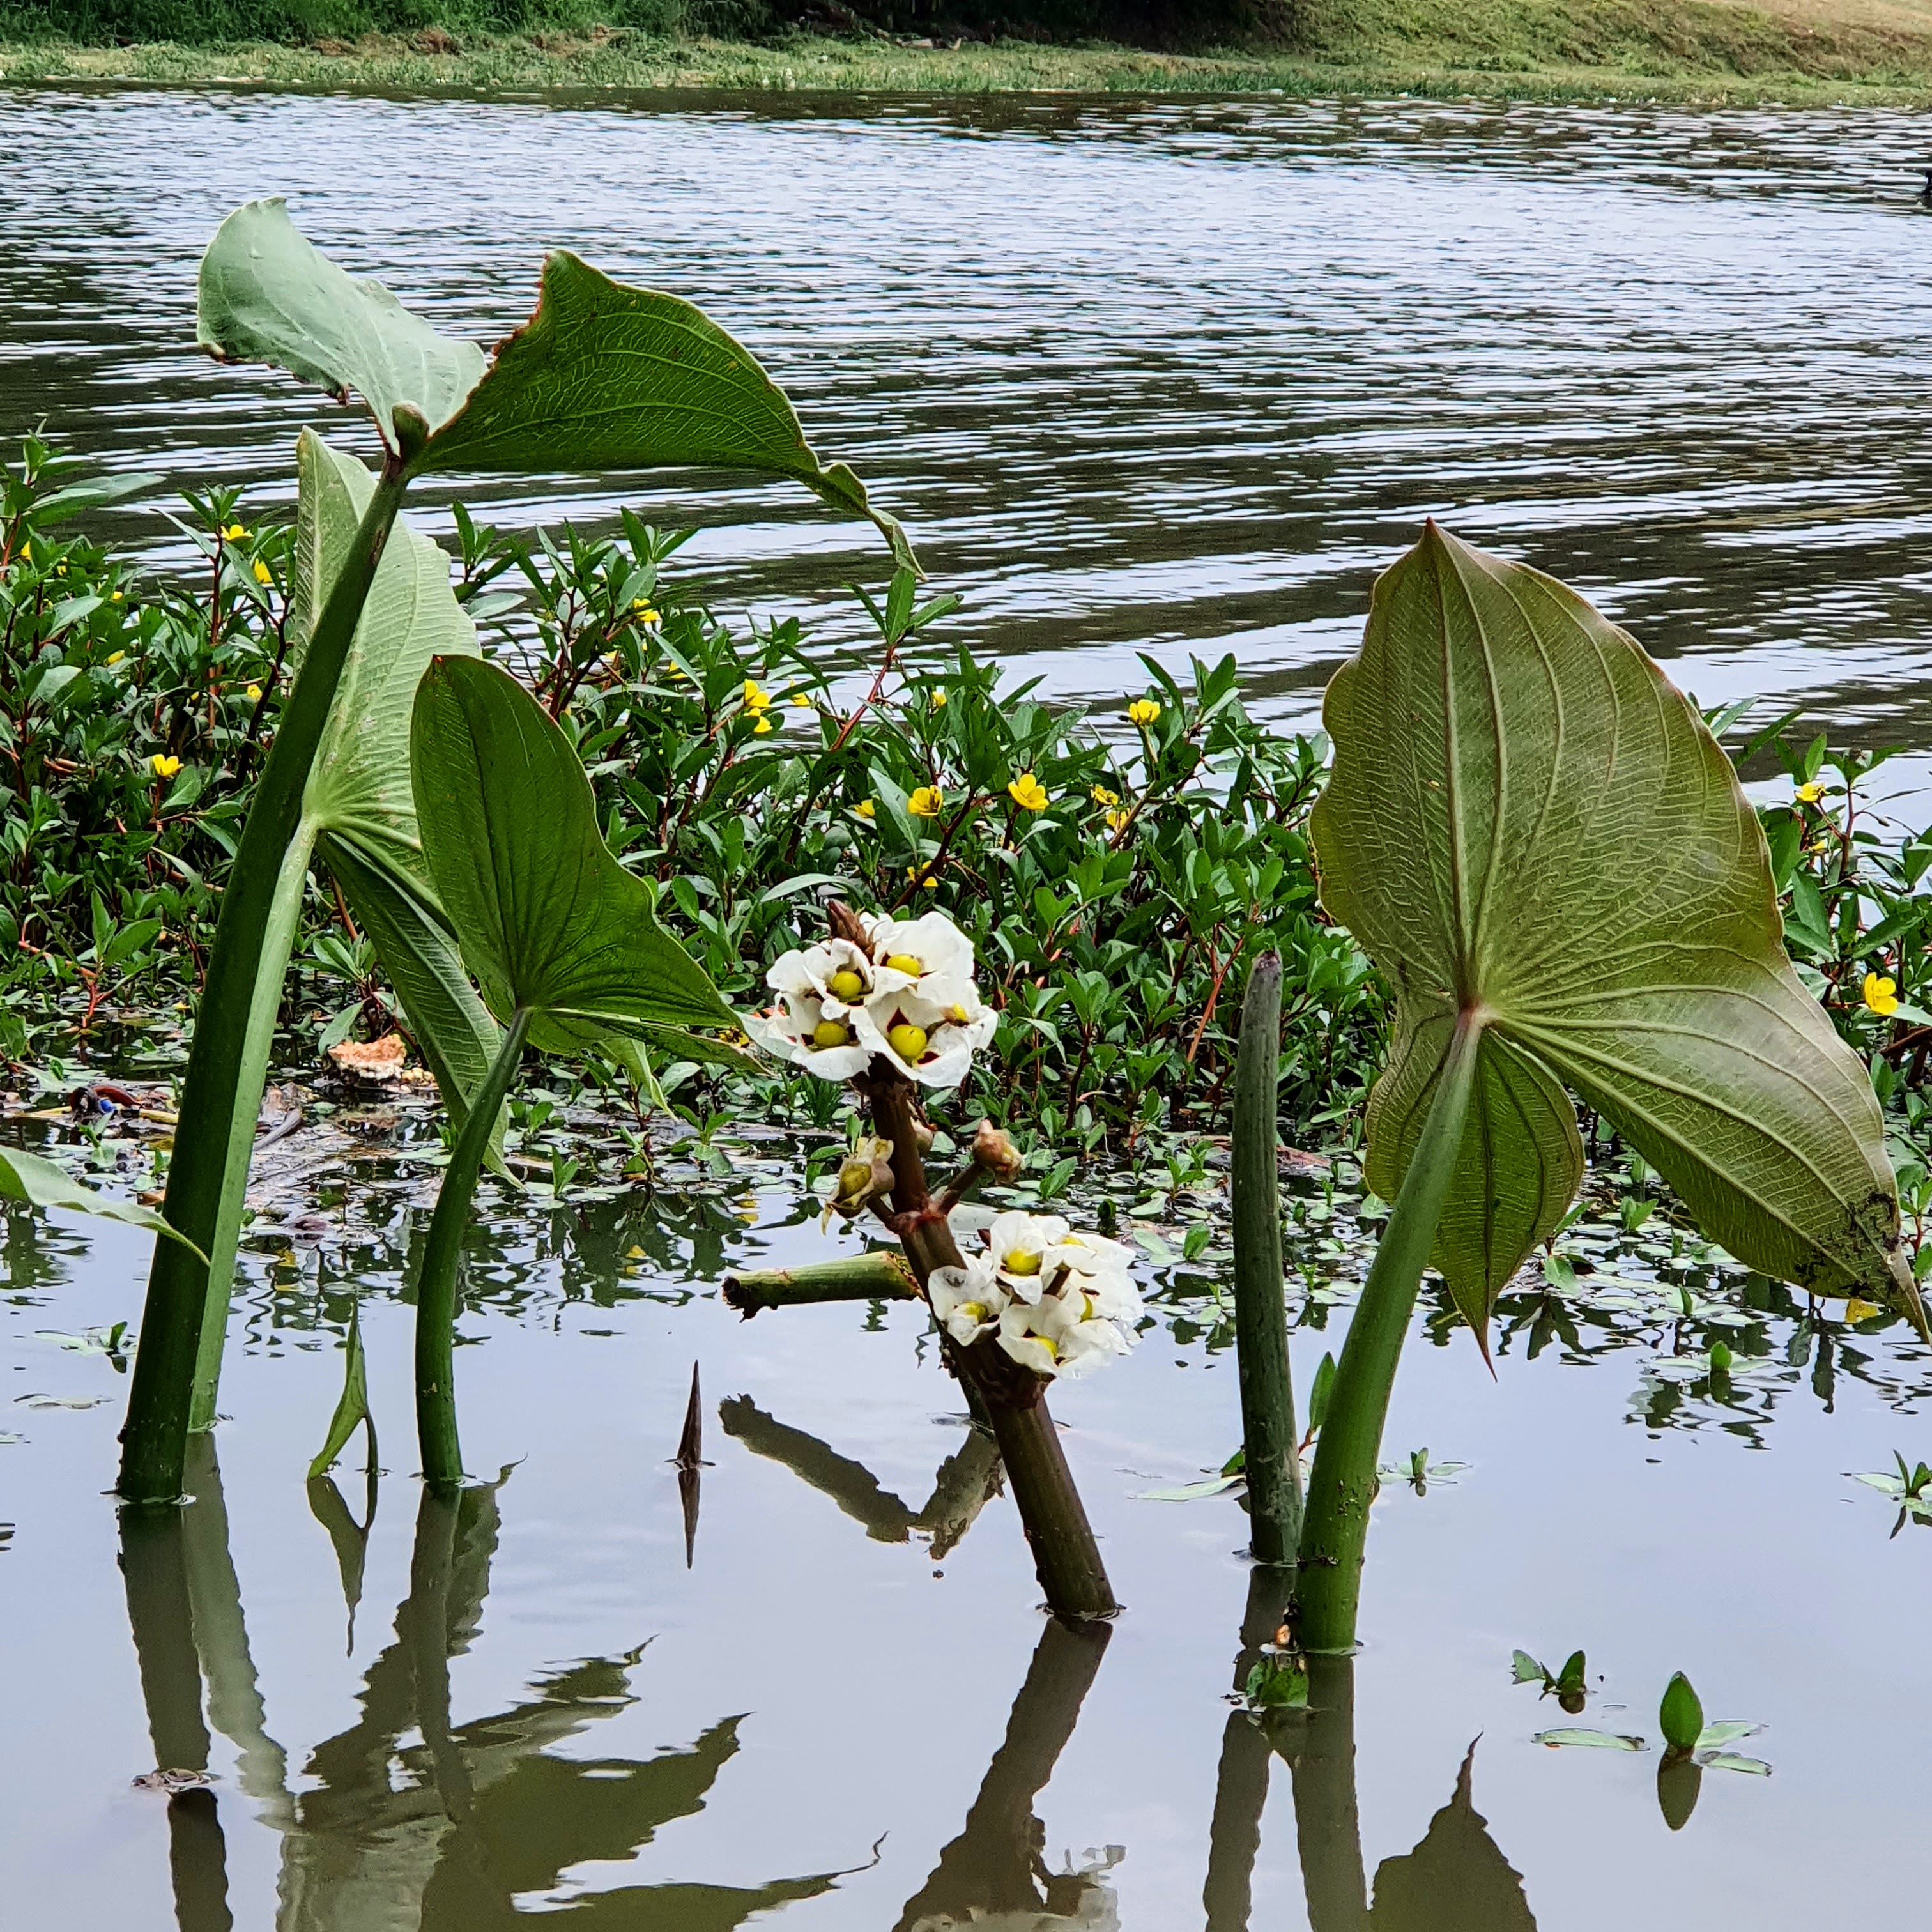 Detalhe das folhas e das flores do aguapé-de-flecha, diretamente da água, em BH.